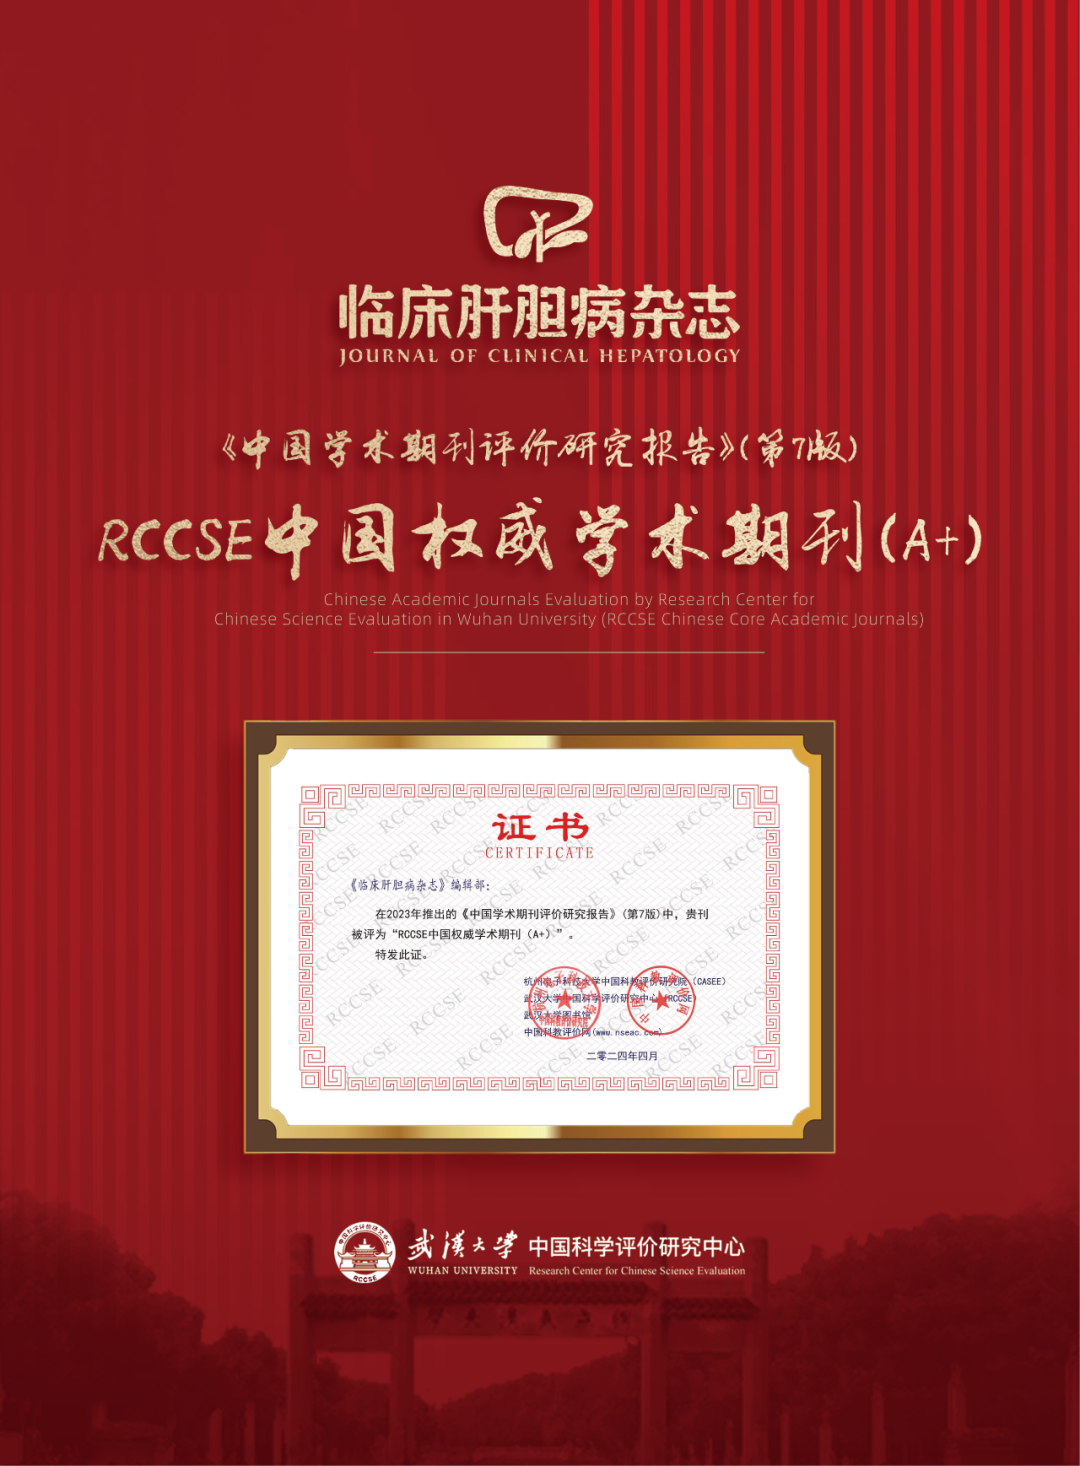 《临床肝胆病杂志》获评“RCCSE<font color="red">中国</font>权威学术期刊（A+）”